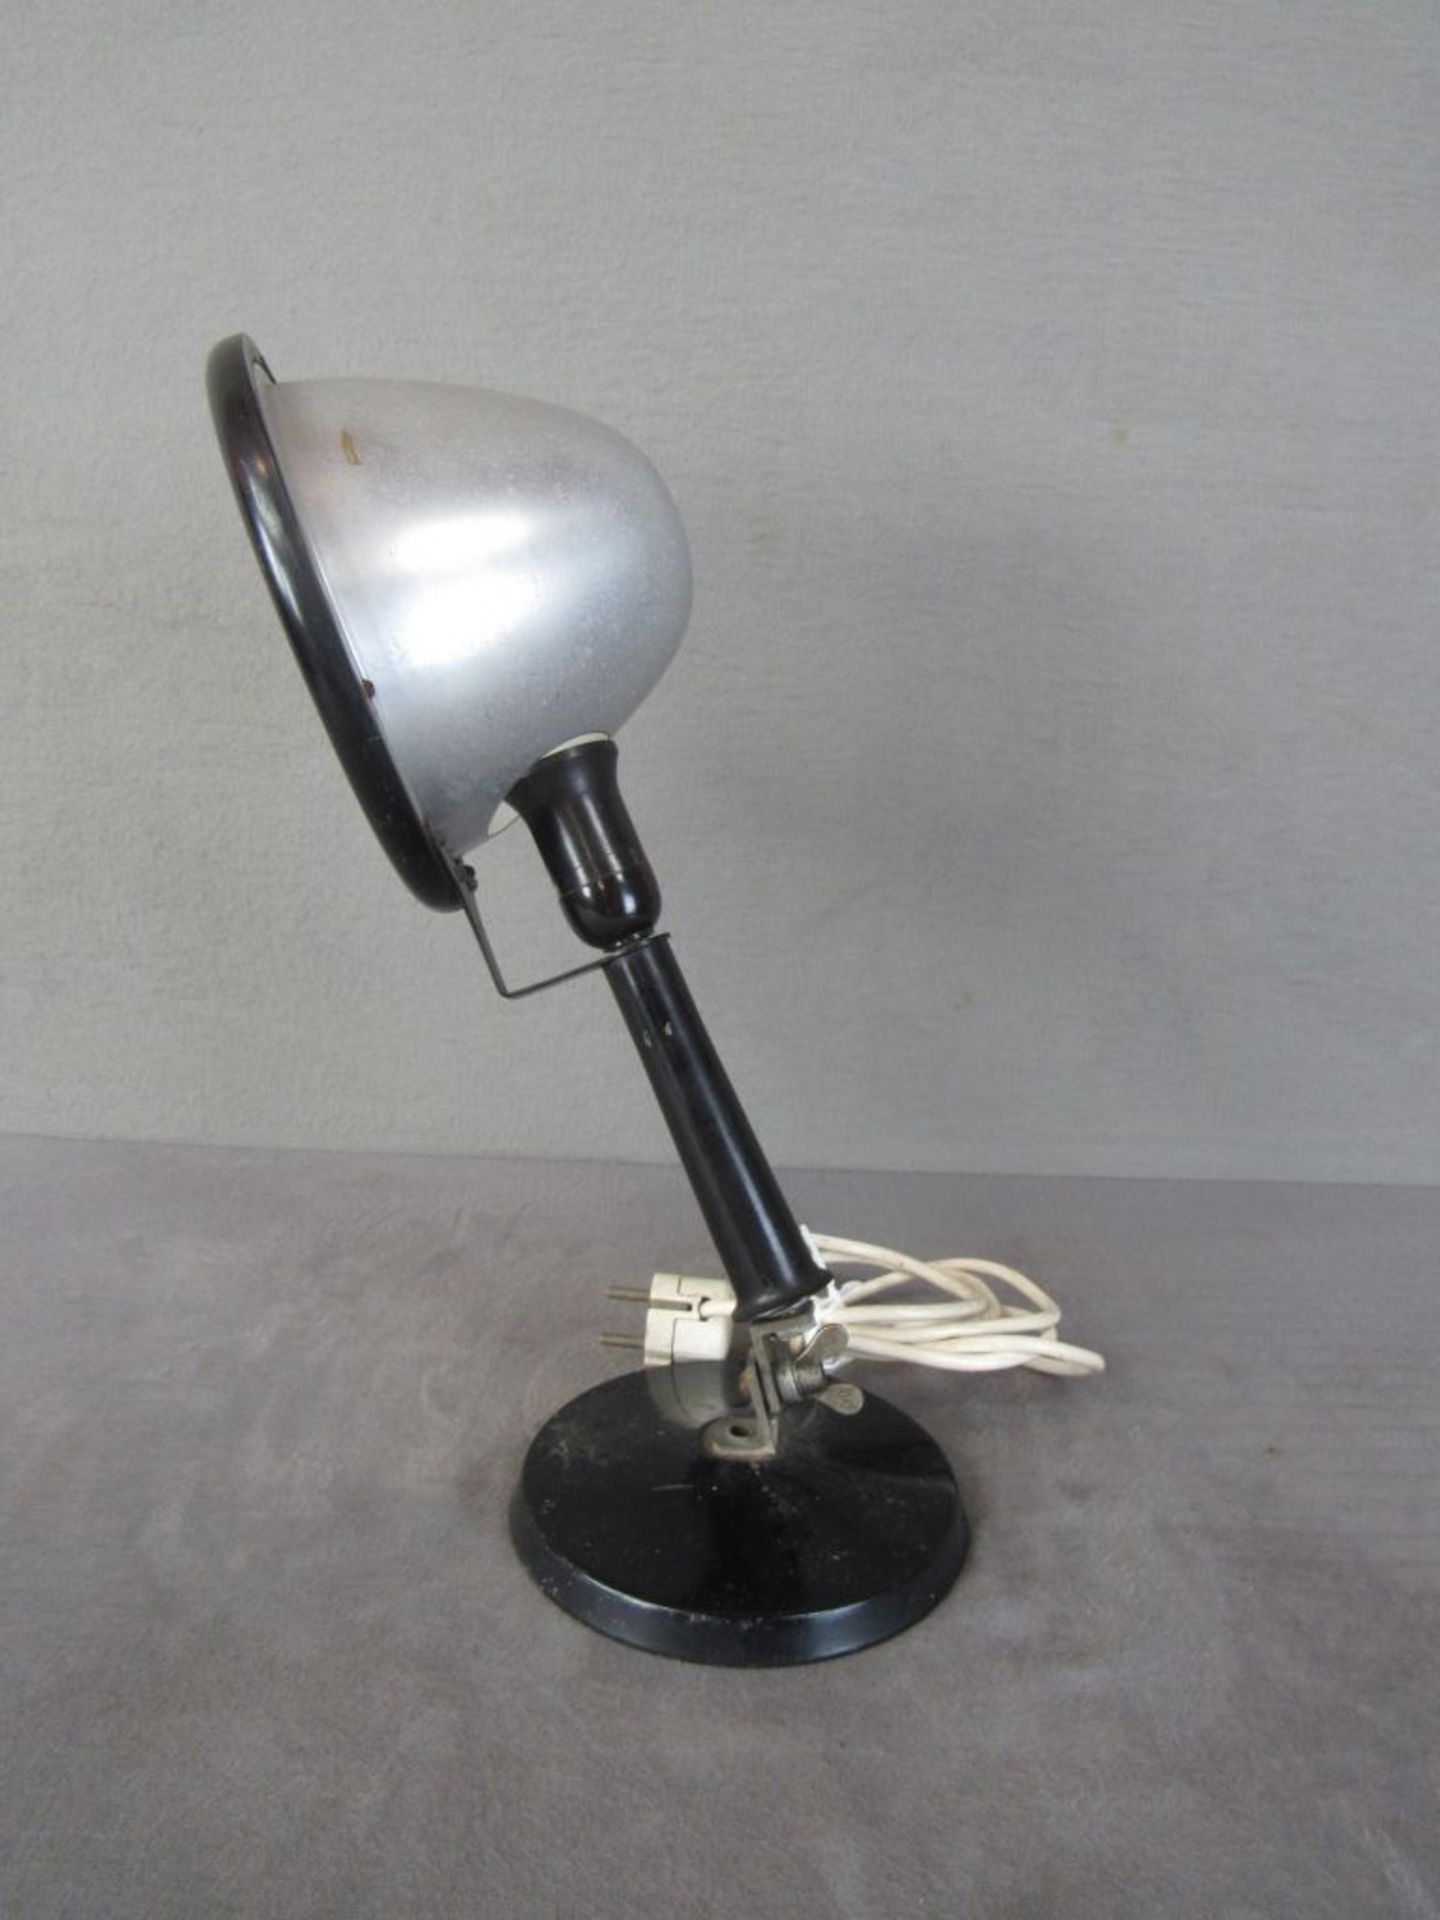 Vintage Industriedesign Arbeitslampe steckbar auf Sockel 50er Jahre 40cm hoch - Bild 3 aus 4